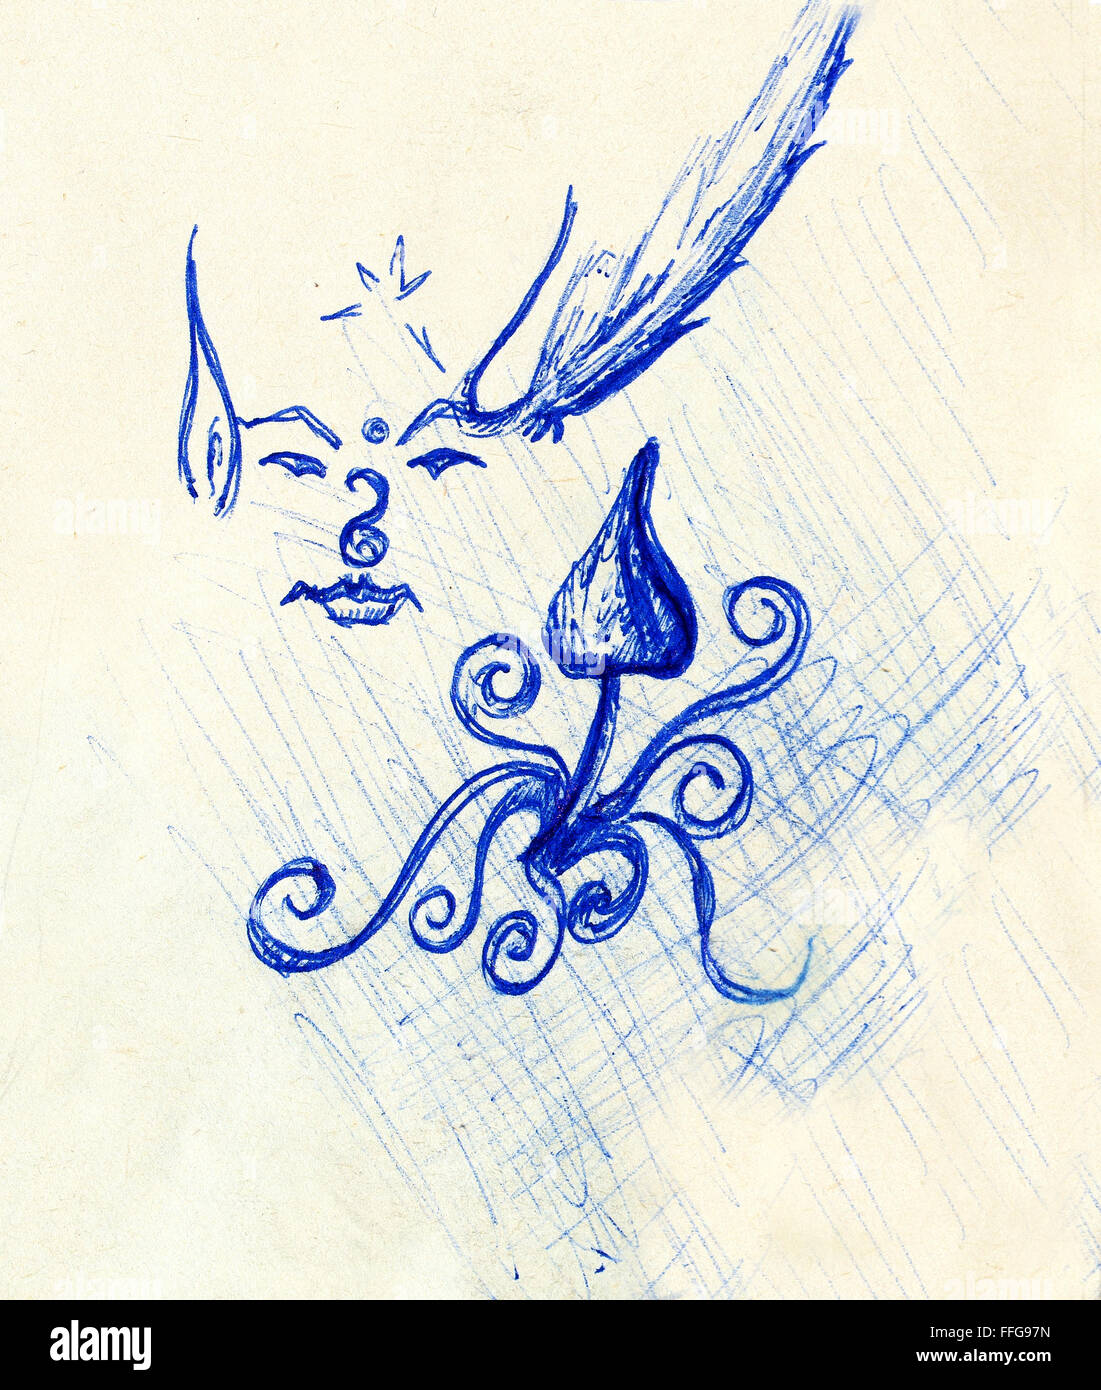 Dessin crayon sur papier ancien elf avec des étoiles et de l'ornement et champignons psychédéliques. Croquis sur papier Banque D'Images